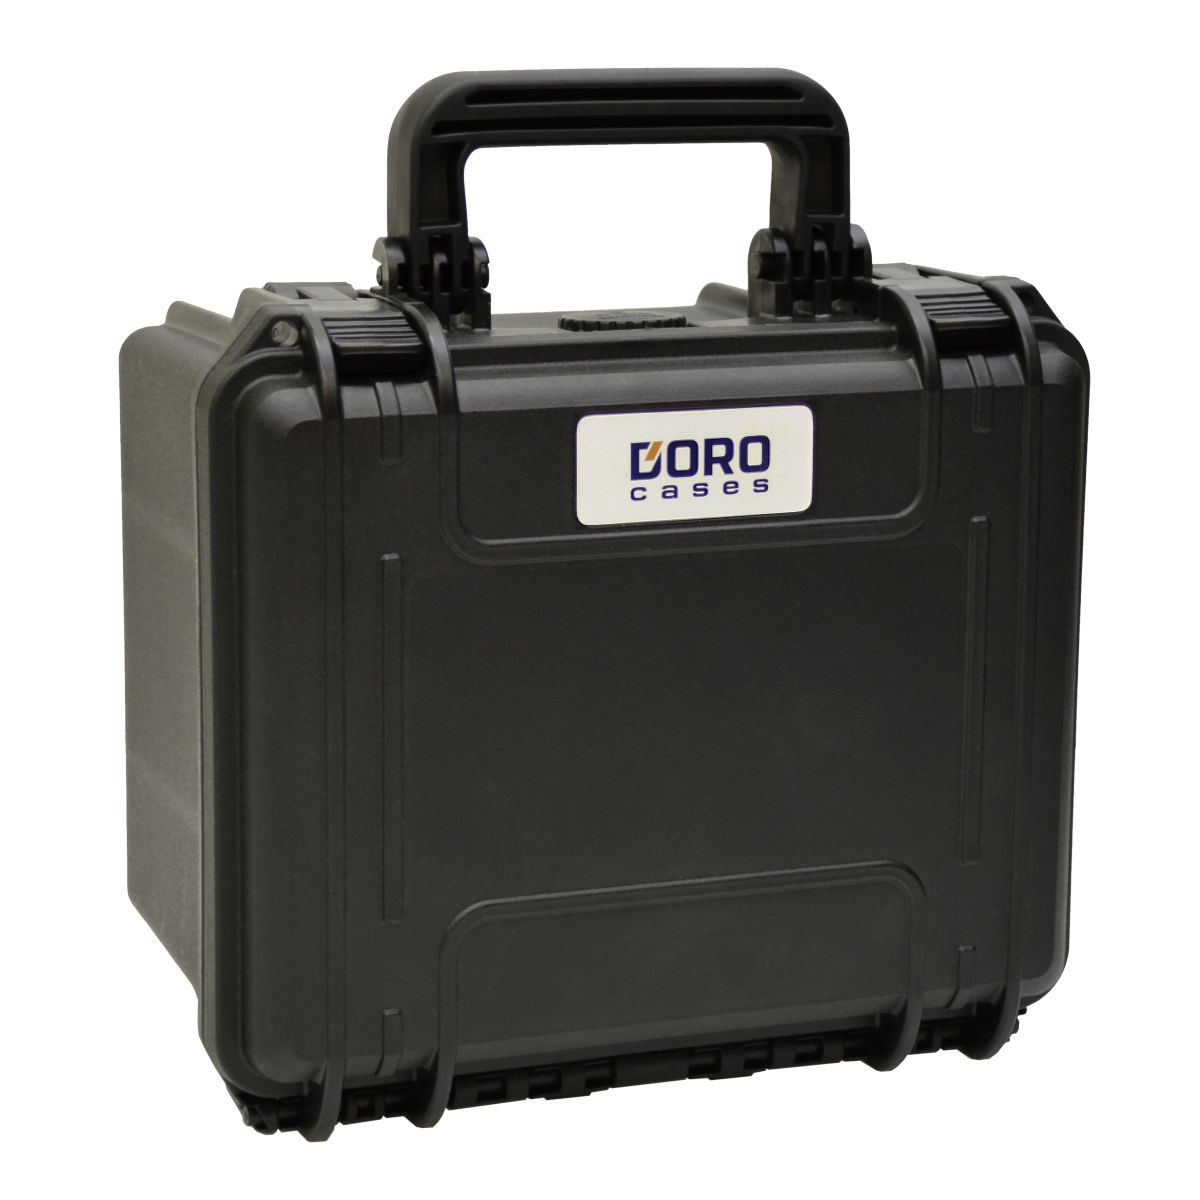 4 x 3.5" SATA / PATA / IDE Hard Drive Storage Case - DORO D0907-6